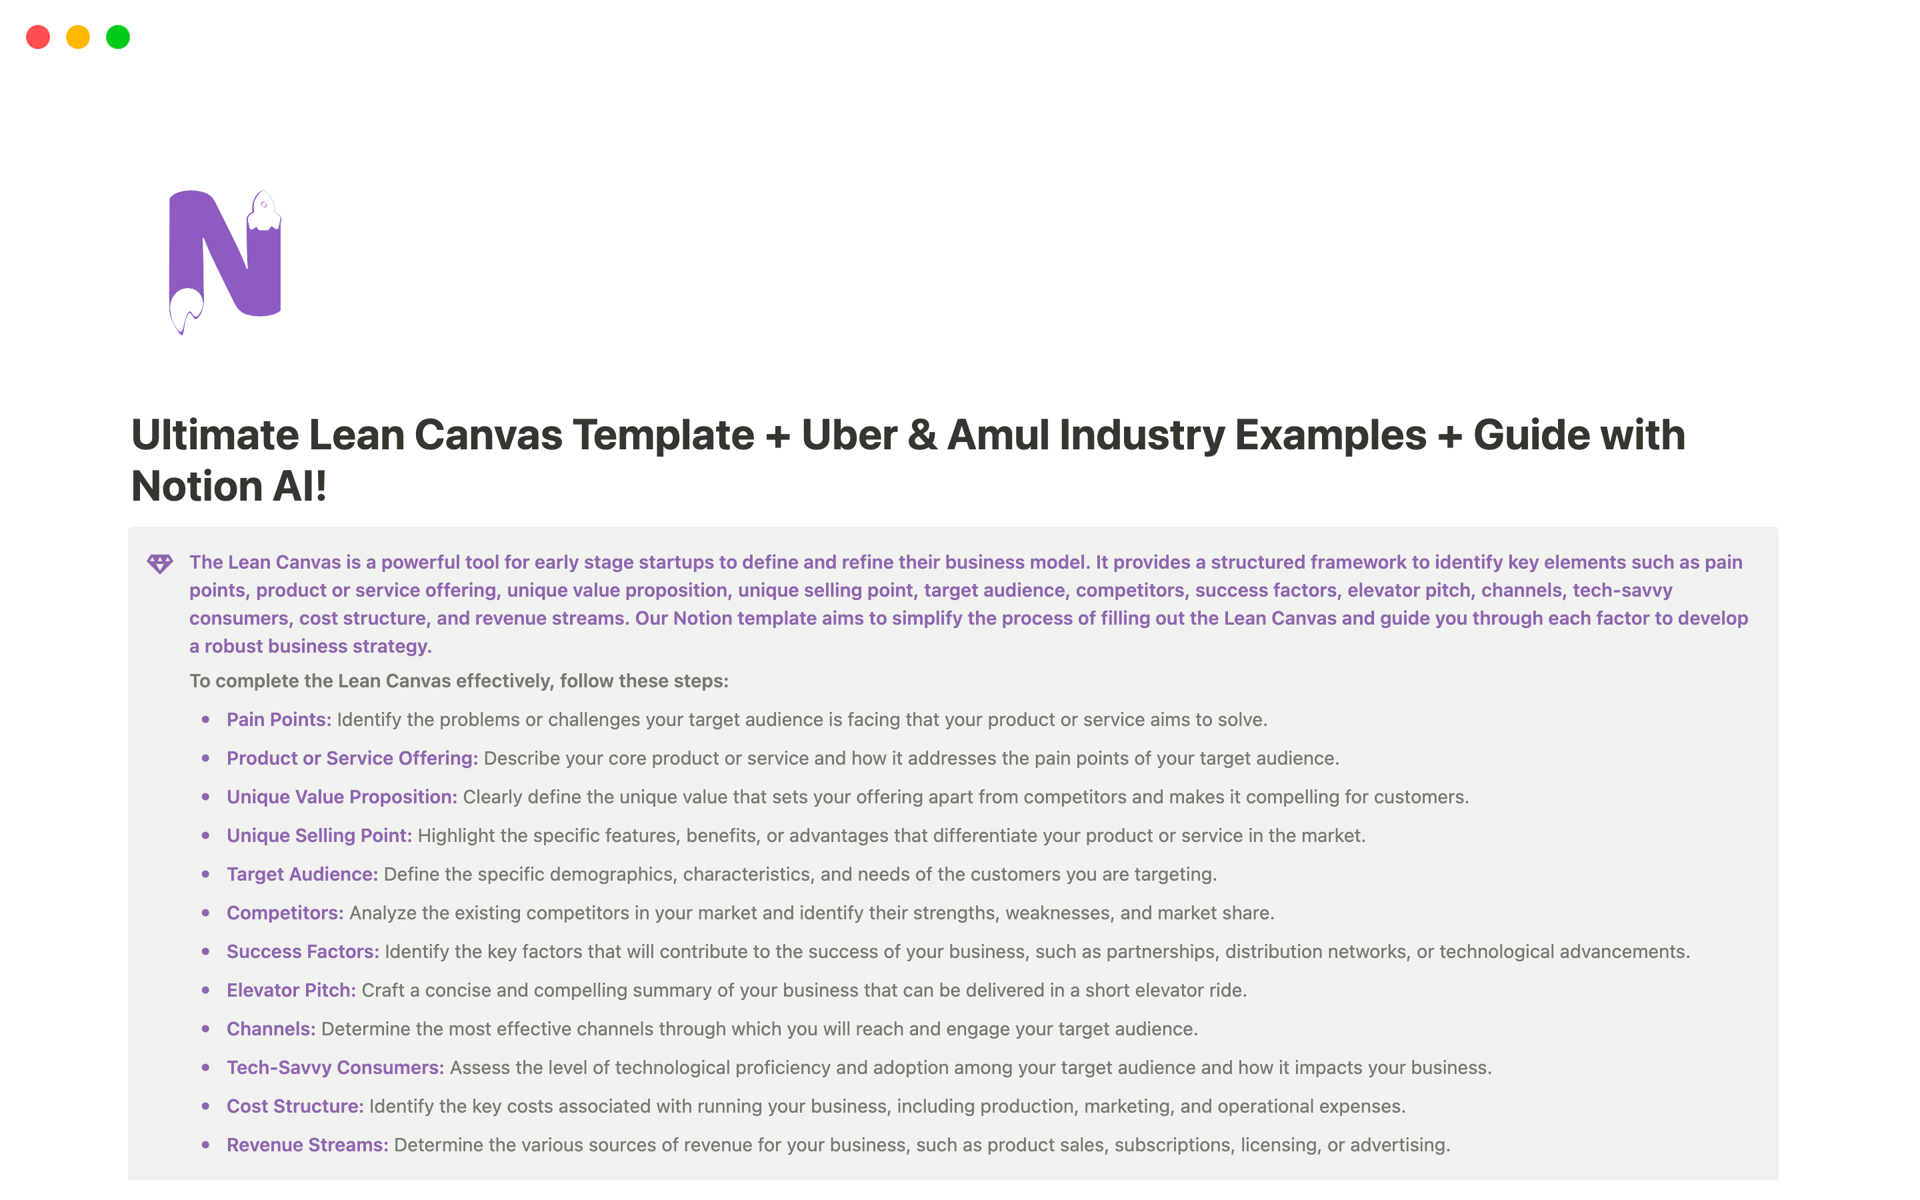 Vista previa de plantilla para Ultimate Lean Canvas with examples of Uber & Amul